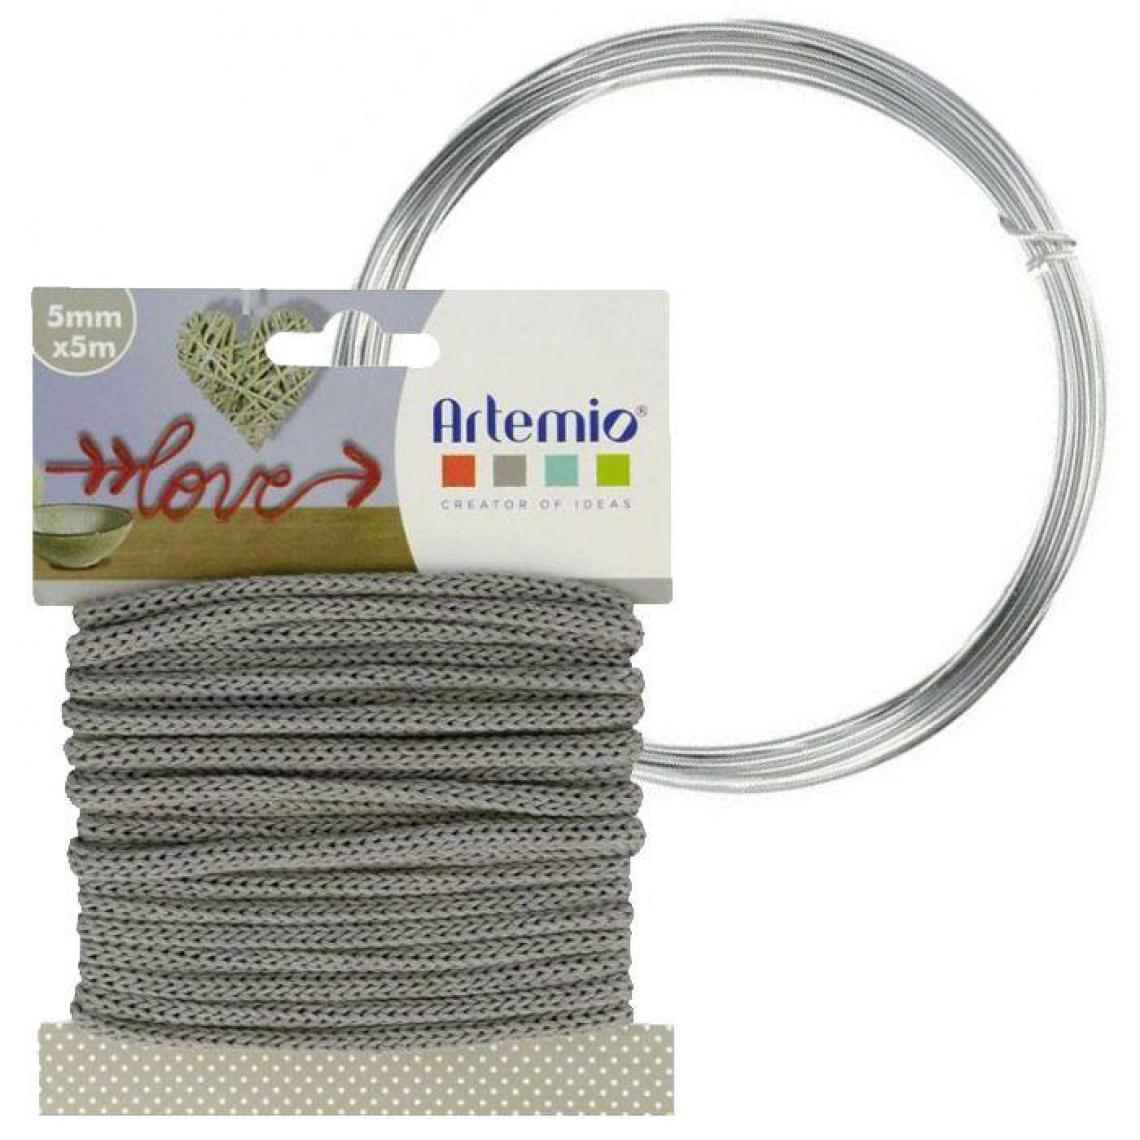 Artemio - Fil à tricotin gris 5 mm x 5 m + fil d'aluminium - Dessin et peinture